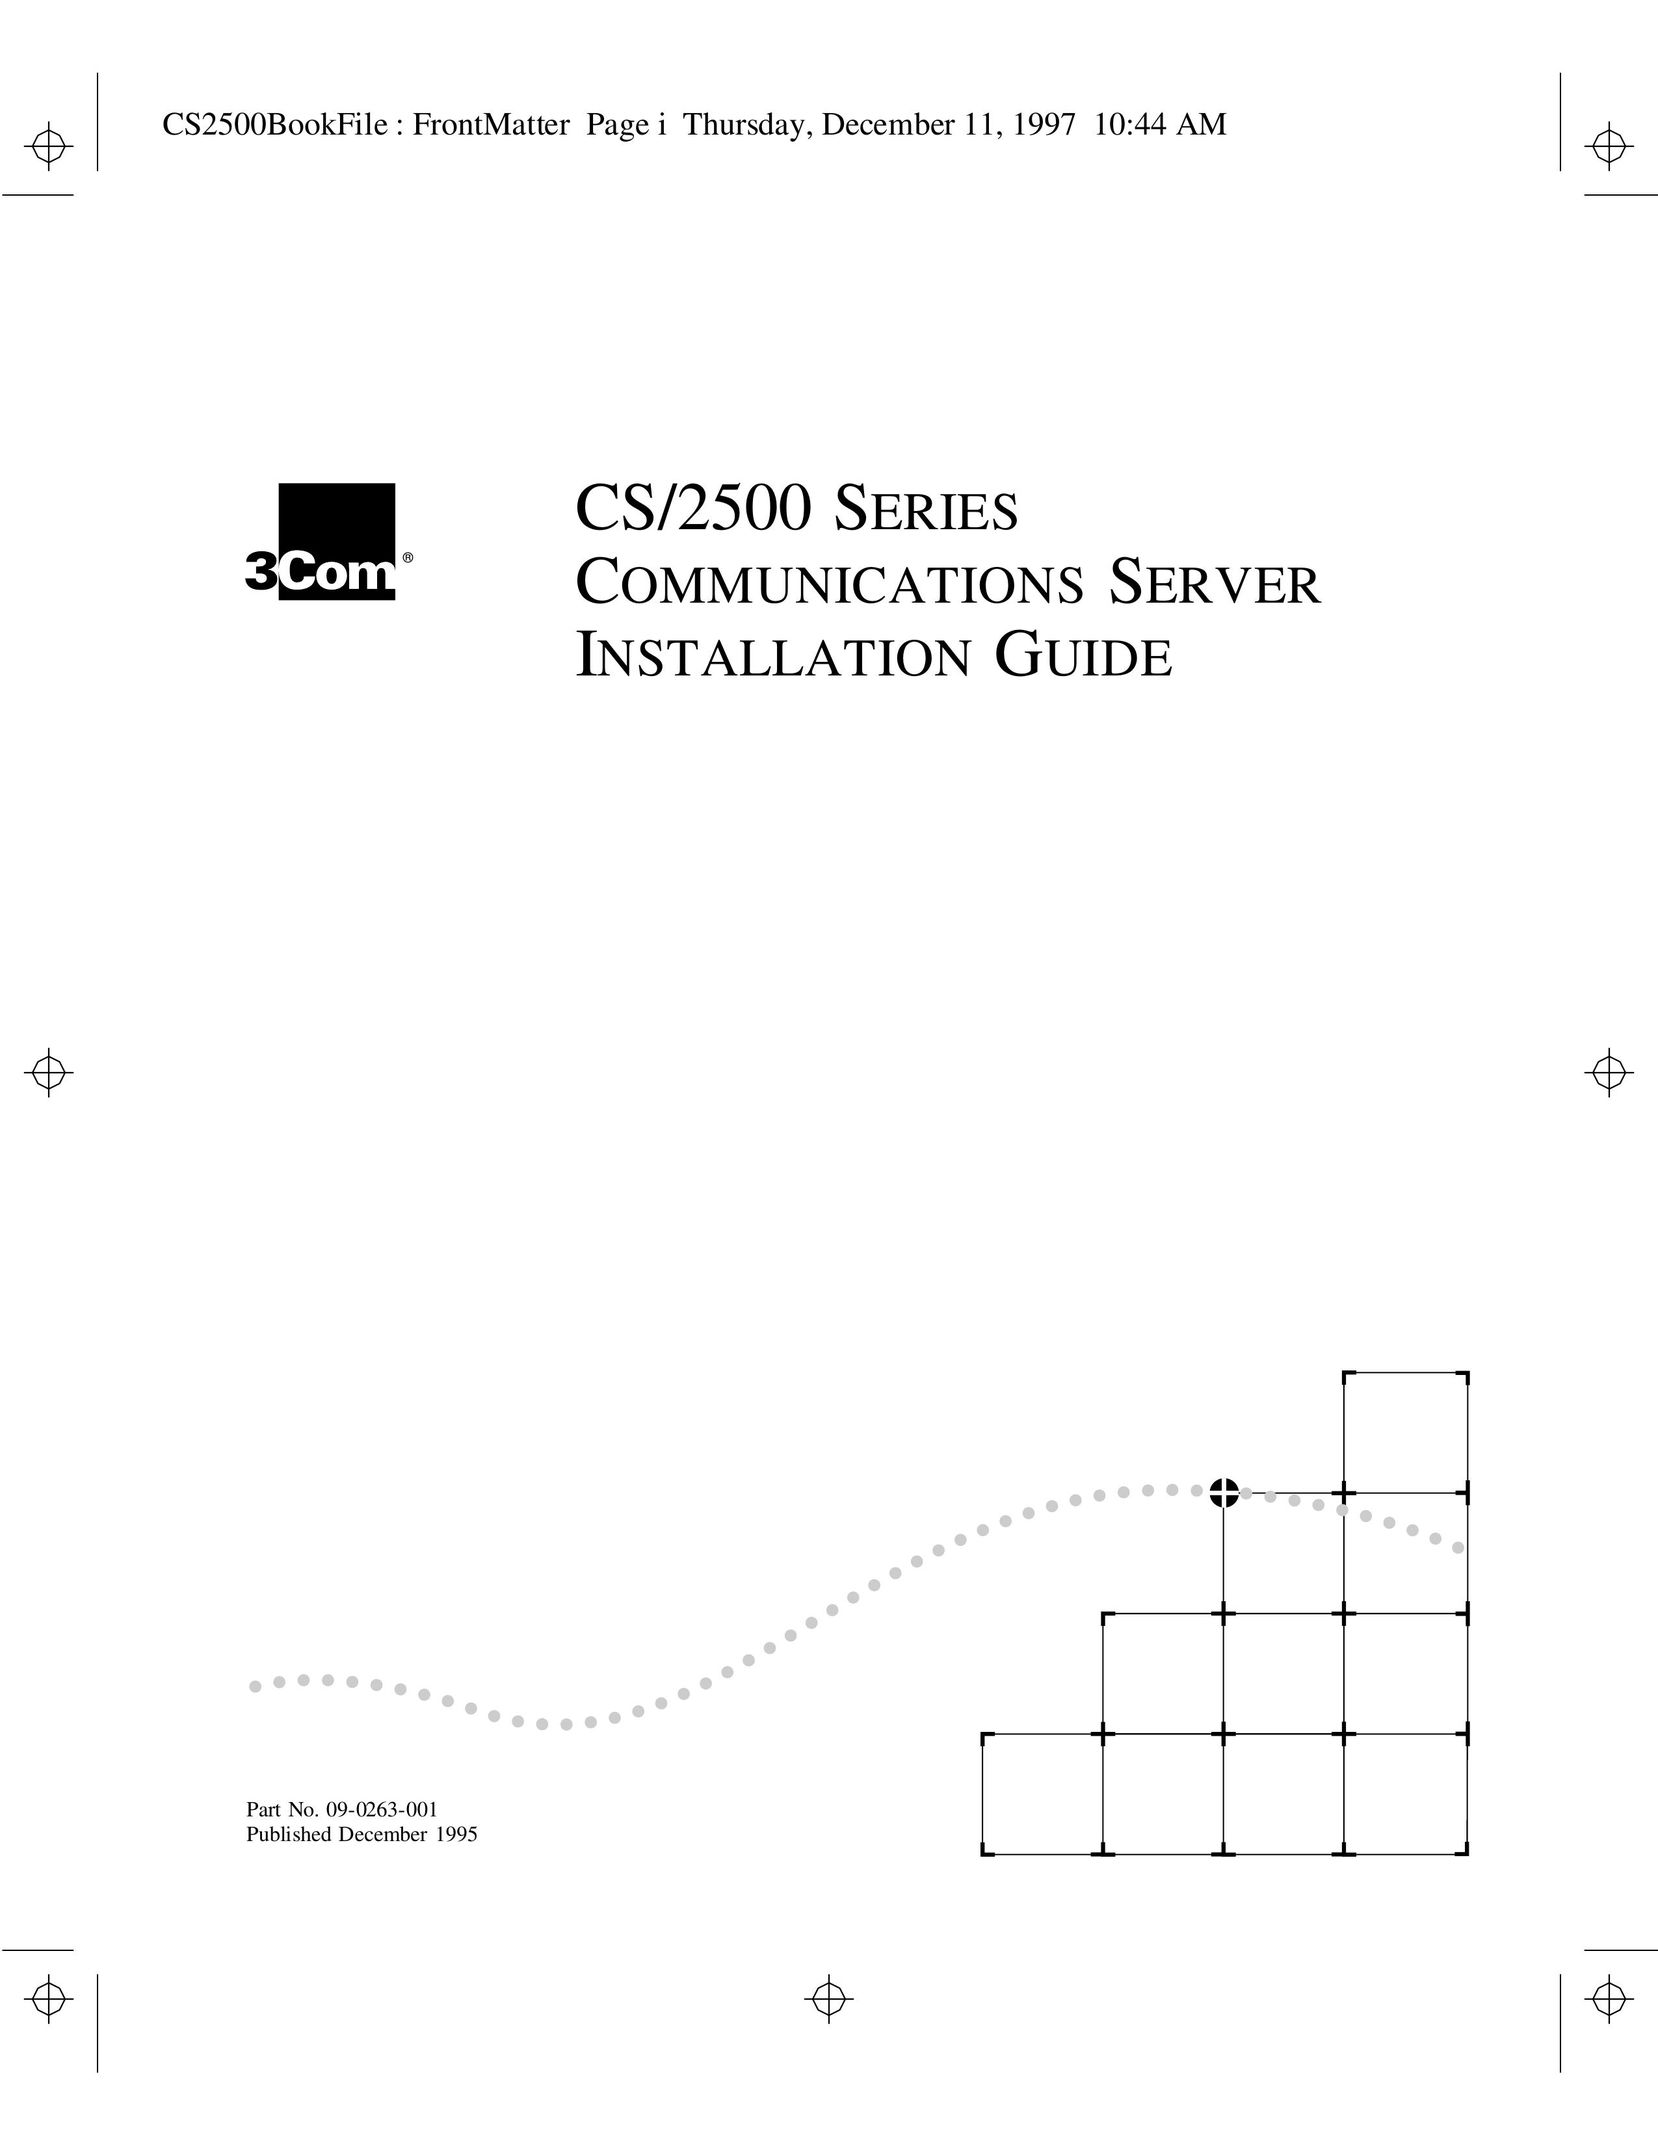 3Com CS/2500 Server User Manual